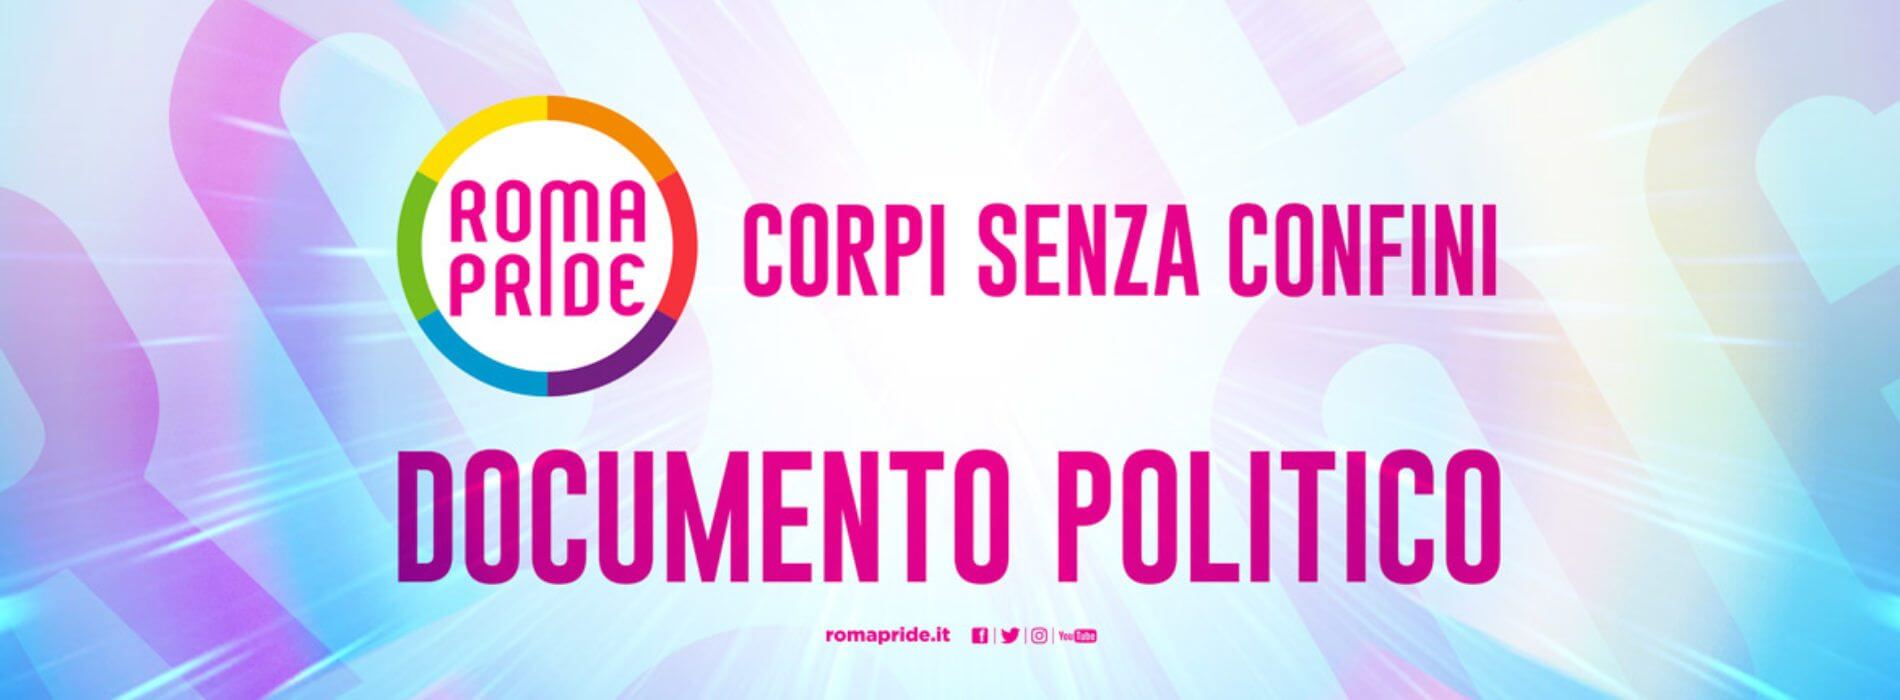 Onda Pride 2017, presentati i documenti politici delle manifestazioni di Roma e Milano - documento politico 2 sito - Gay.it